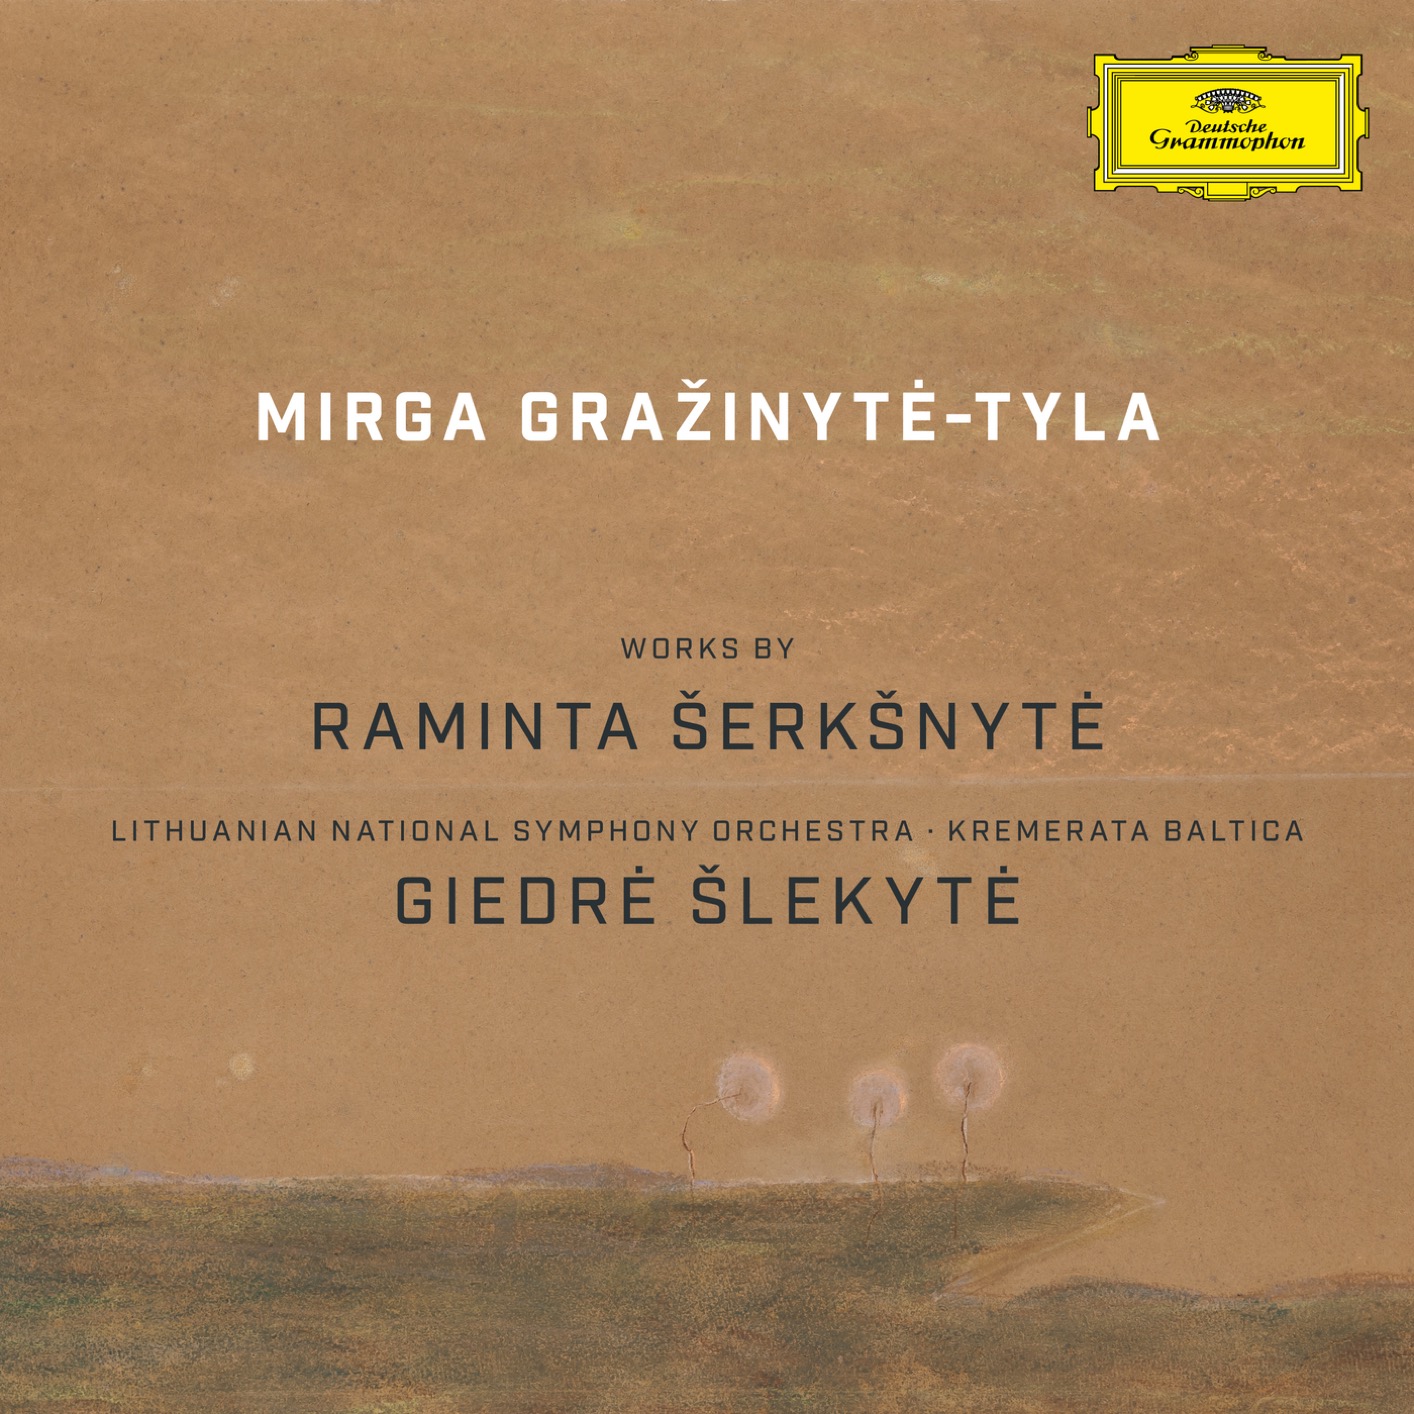 Mirga Grazinyte-Tyla – Works by Raminta Serksnyte (2019) [FLAC 24bit/96kHz]